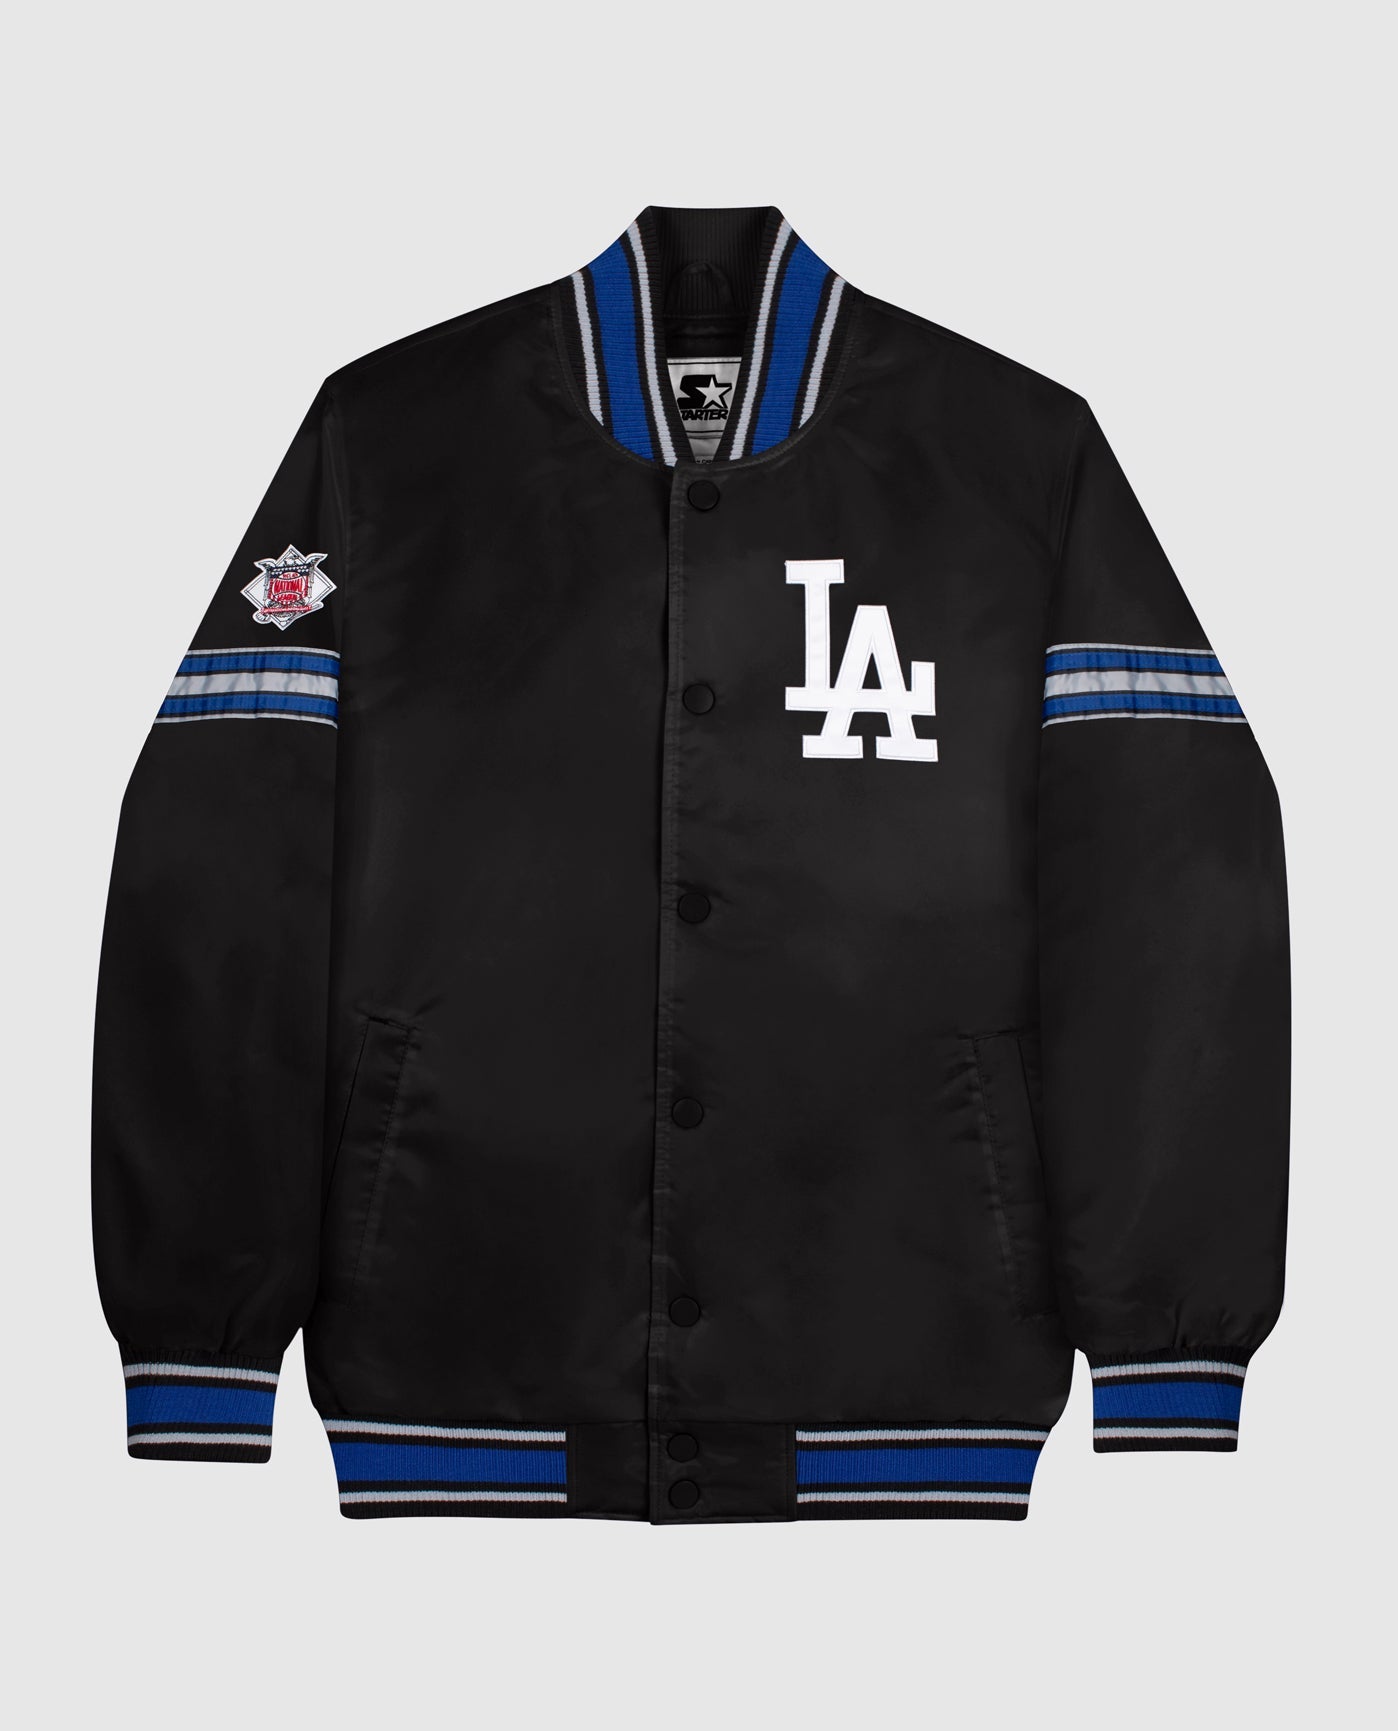 L.A. Dodgers Starter Jackets , Dodgers Pullover Starter Jacket